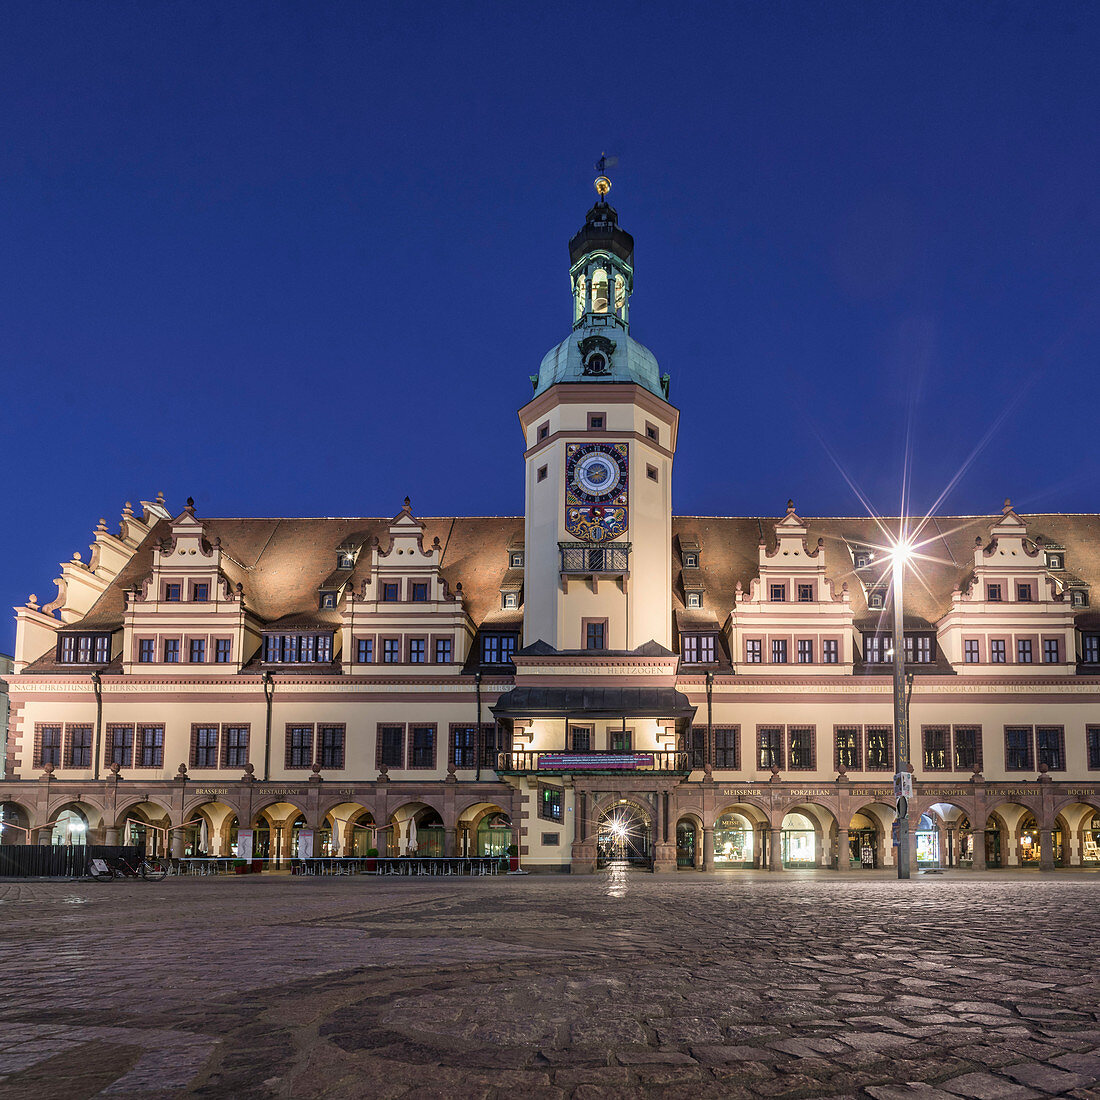 Uhrenturm, altes Rathaus von Leipzig, Sachsen, Deutschland